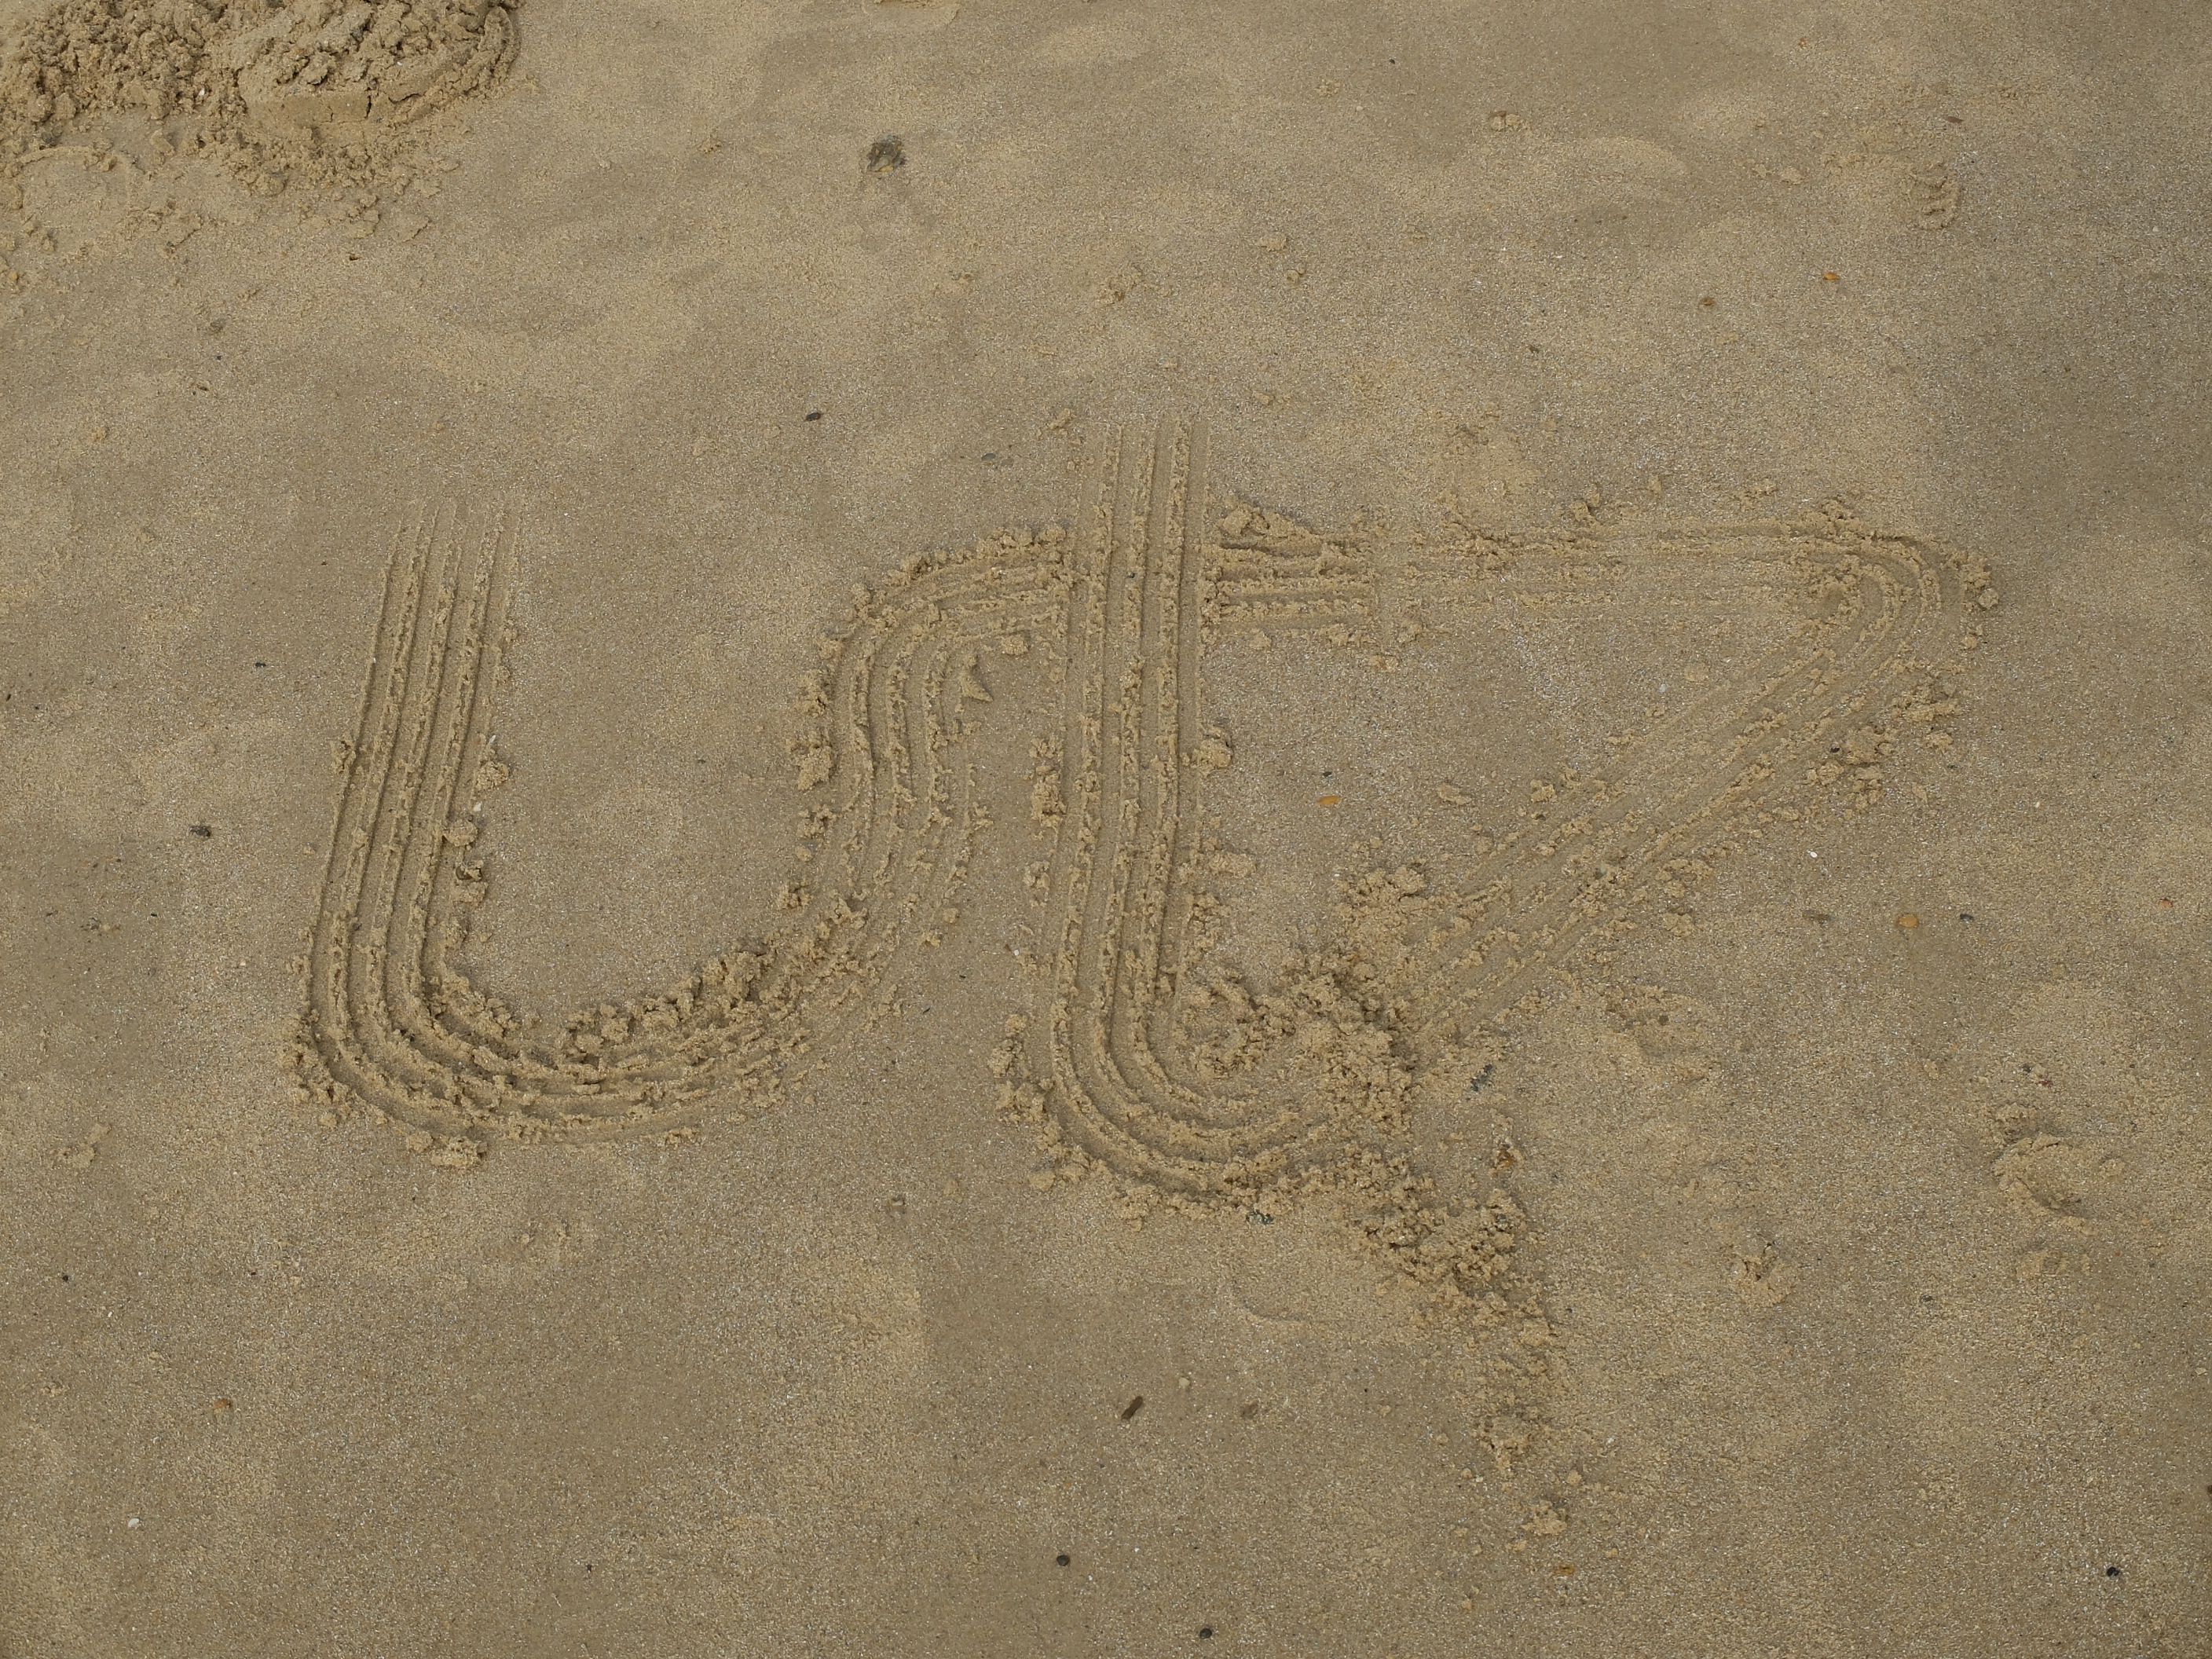 premier logo ut7 sur le sable